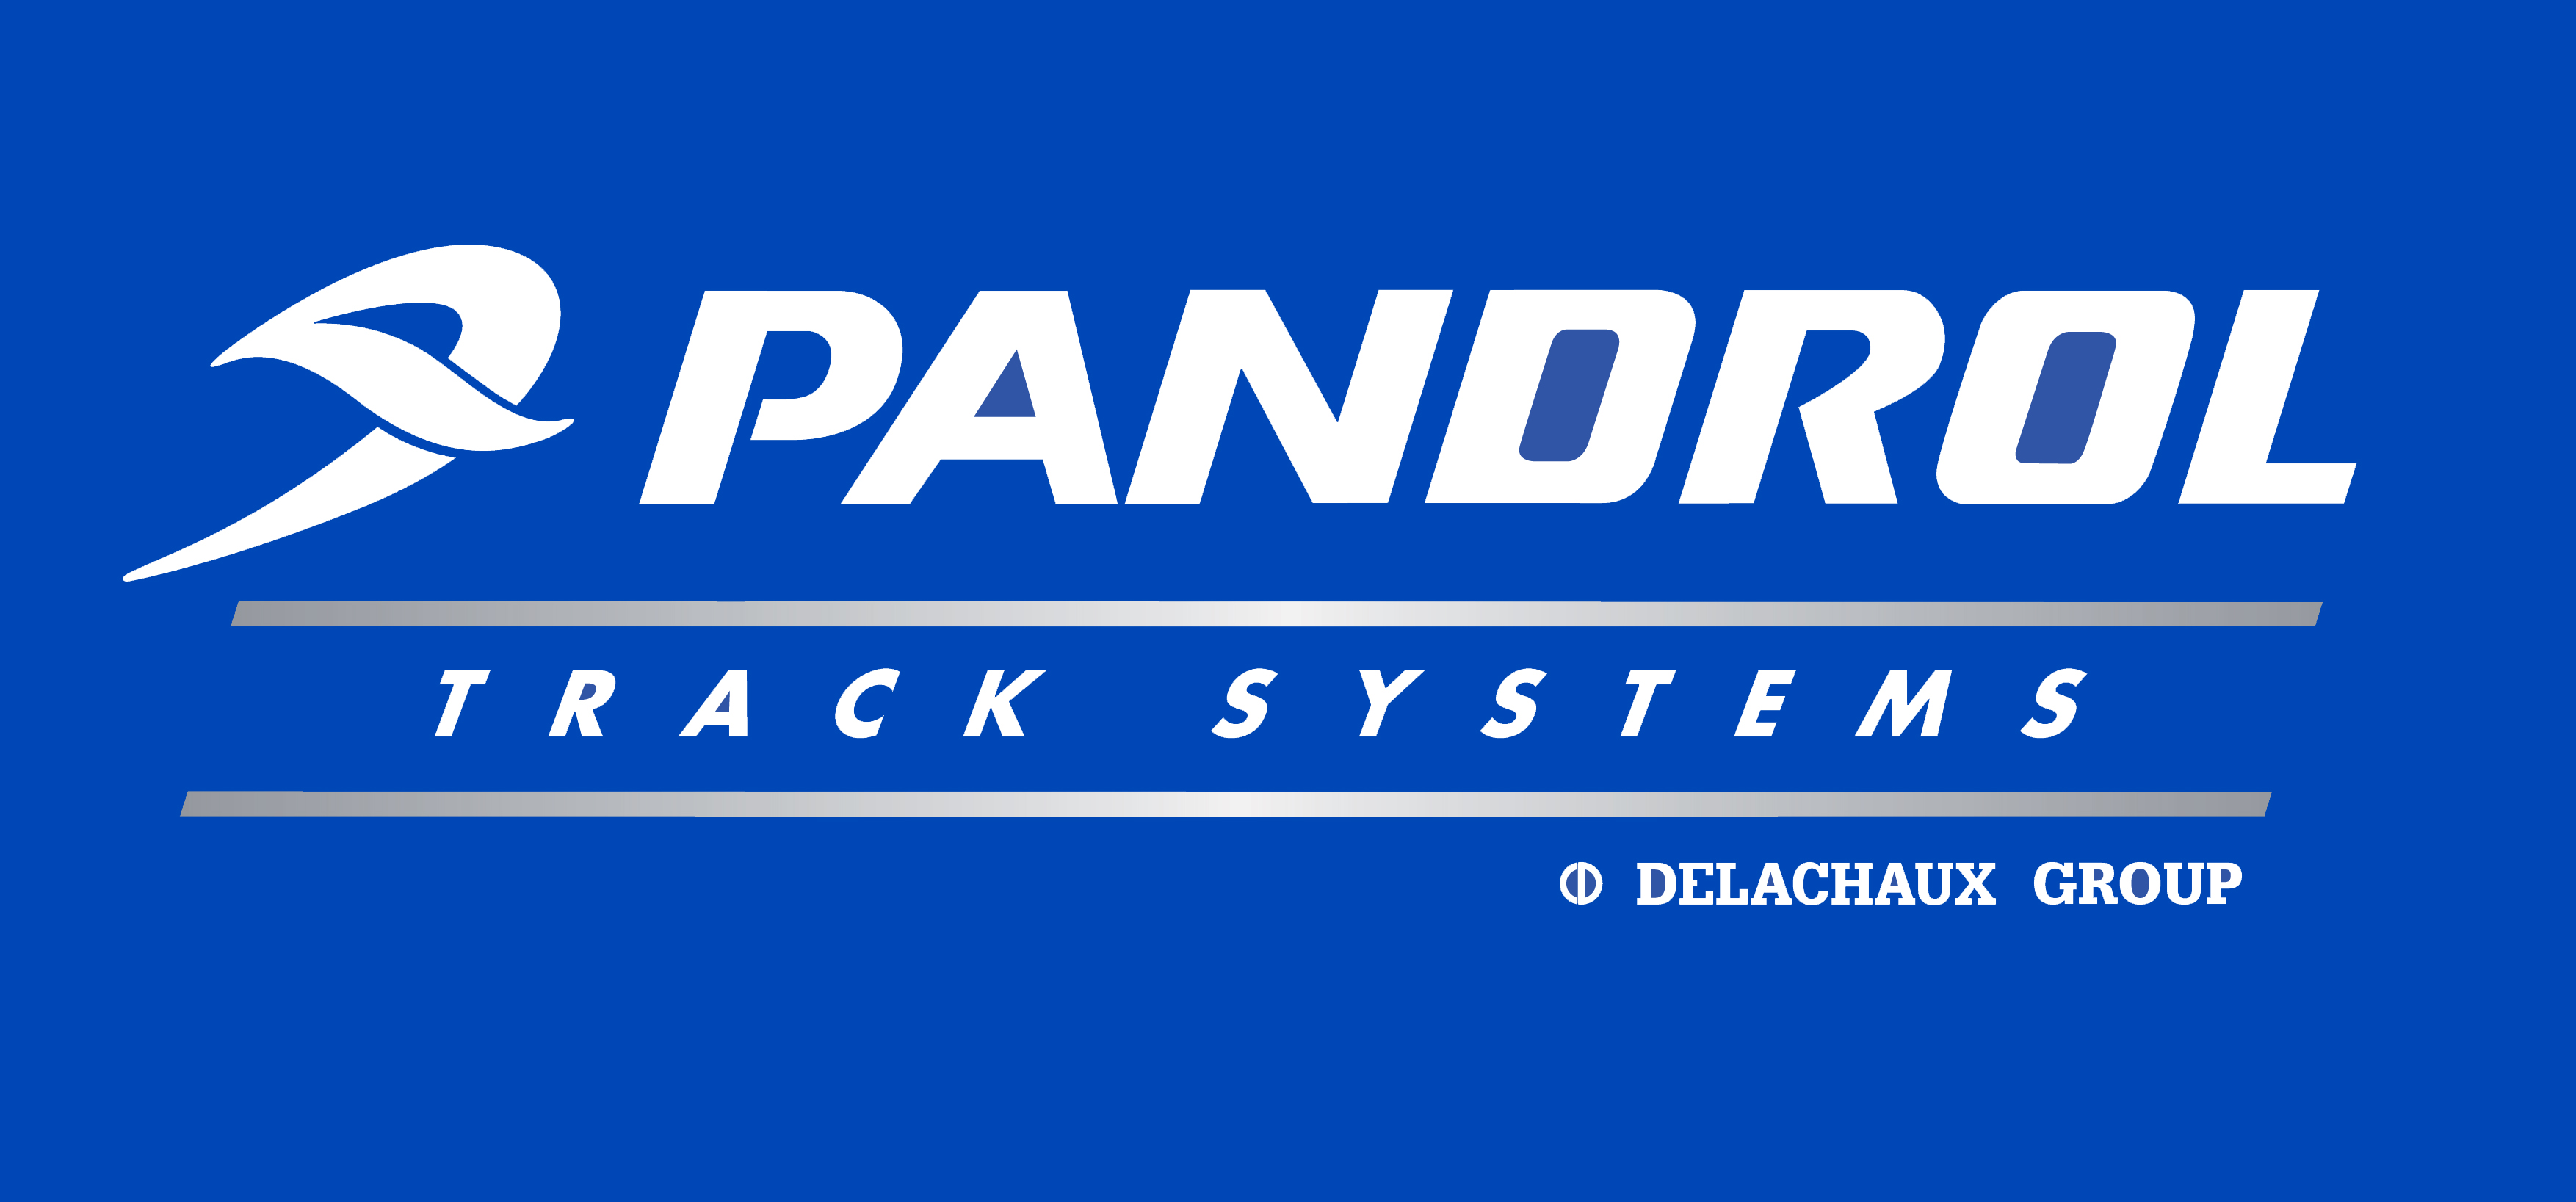 PAN logo blue